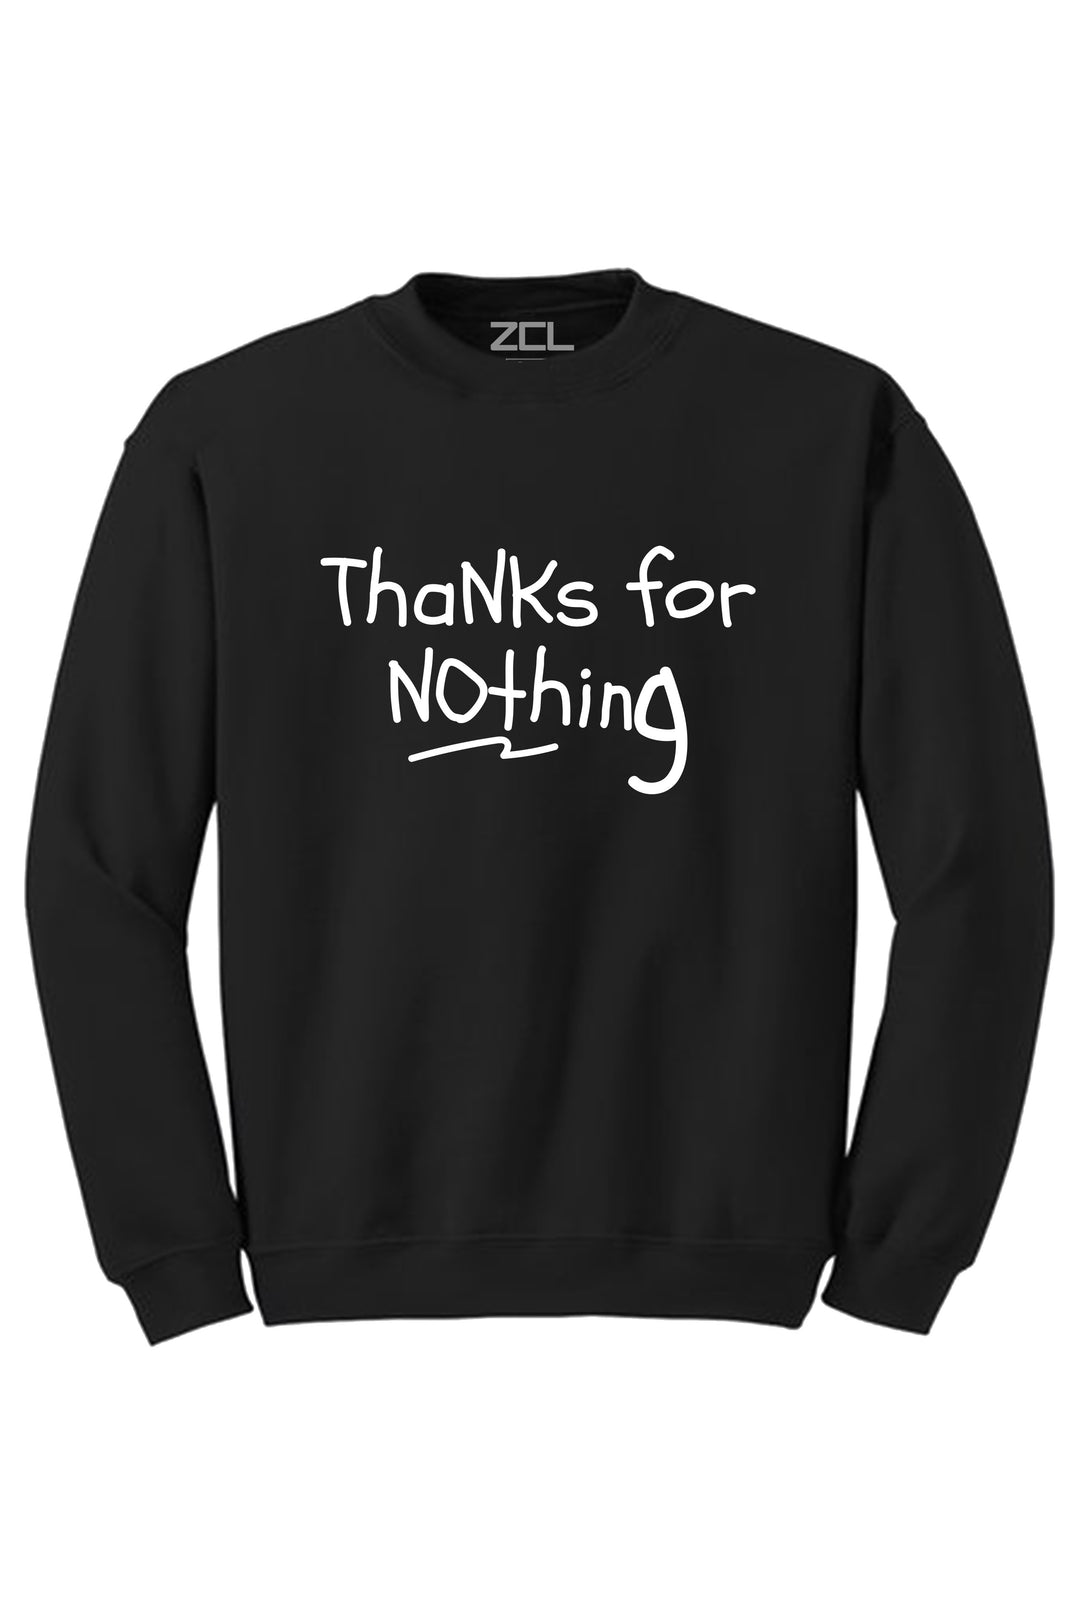 Thanks For Nothing Crewneck Sweatshirt (White Logo) - Zamage